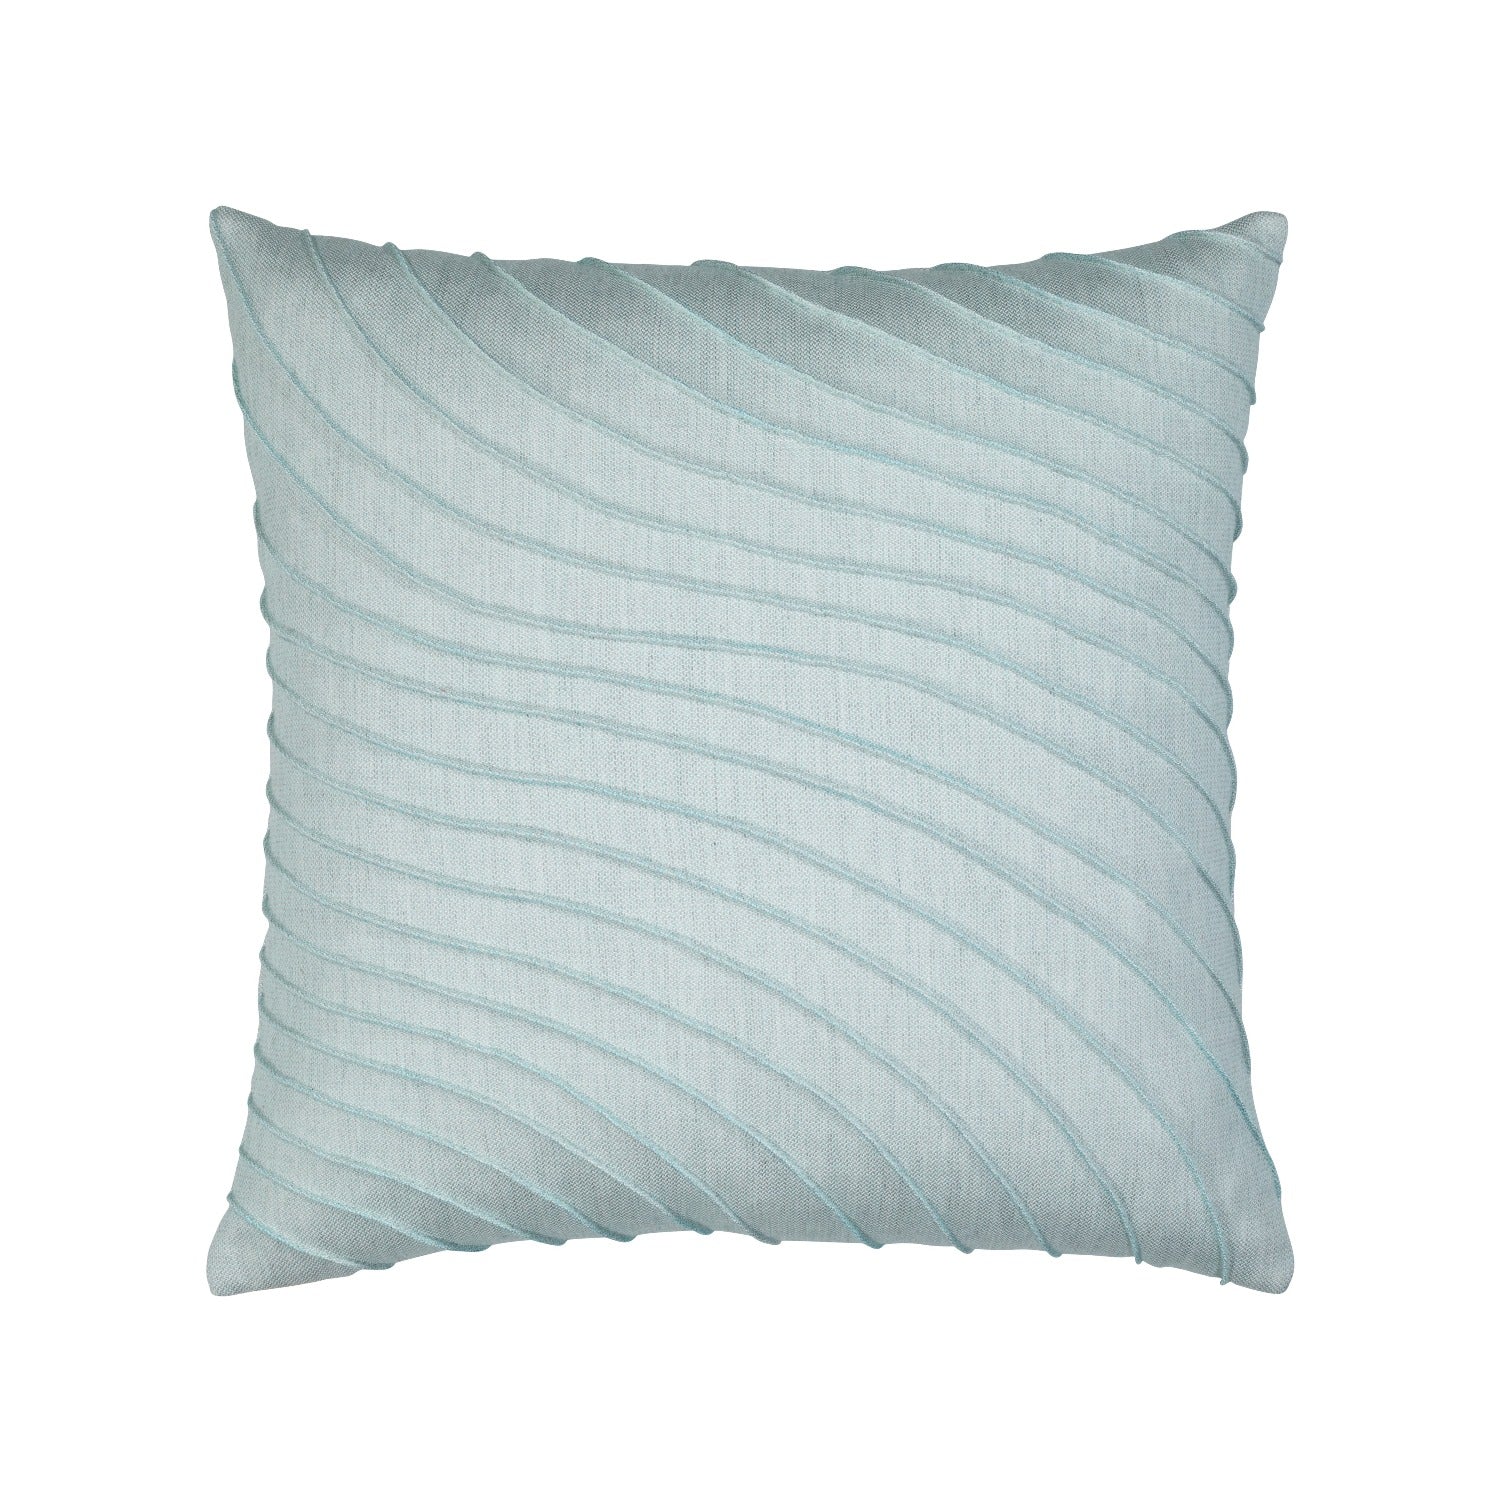 Elaine Smith Tidal Glacier 20 inch Square Pillow Throw Pillows 12041459